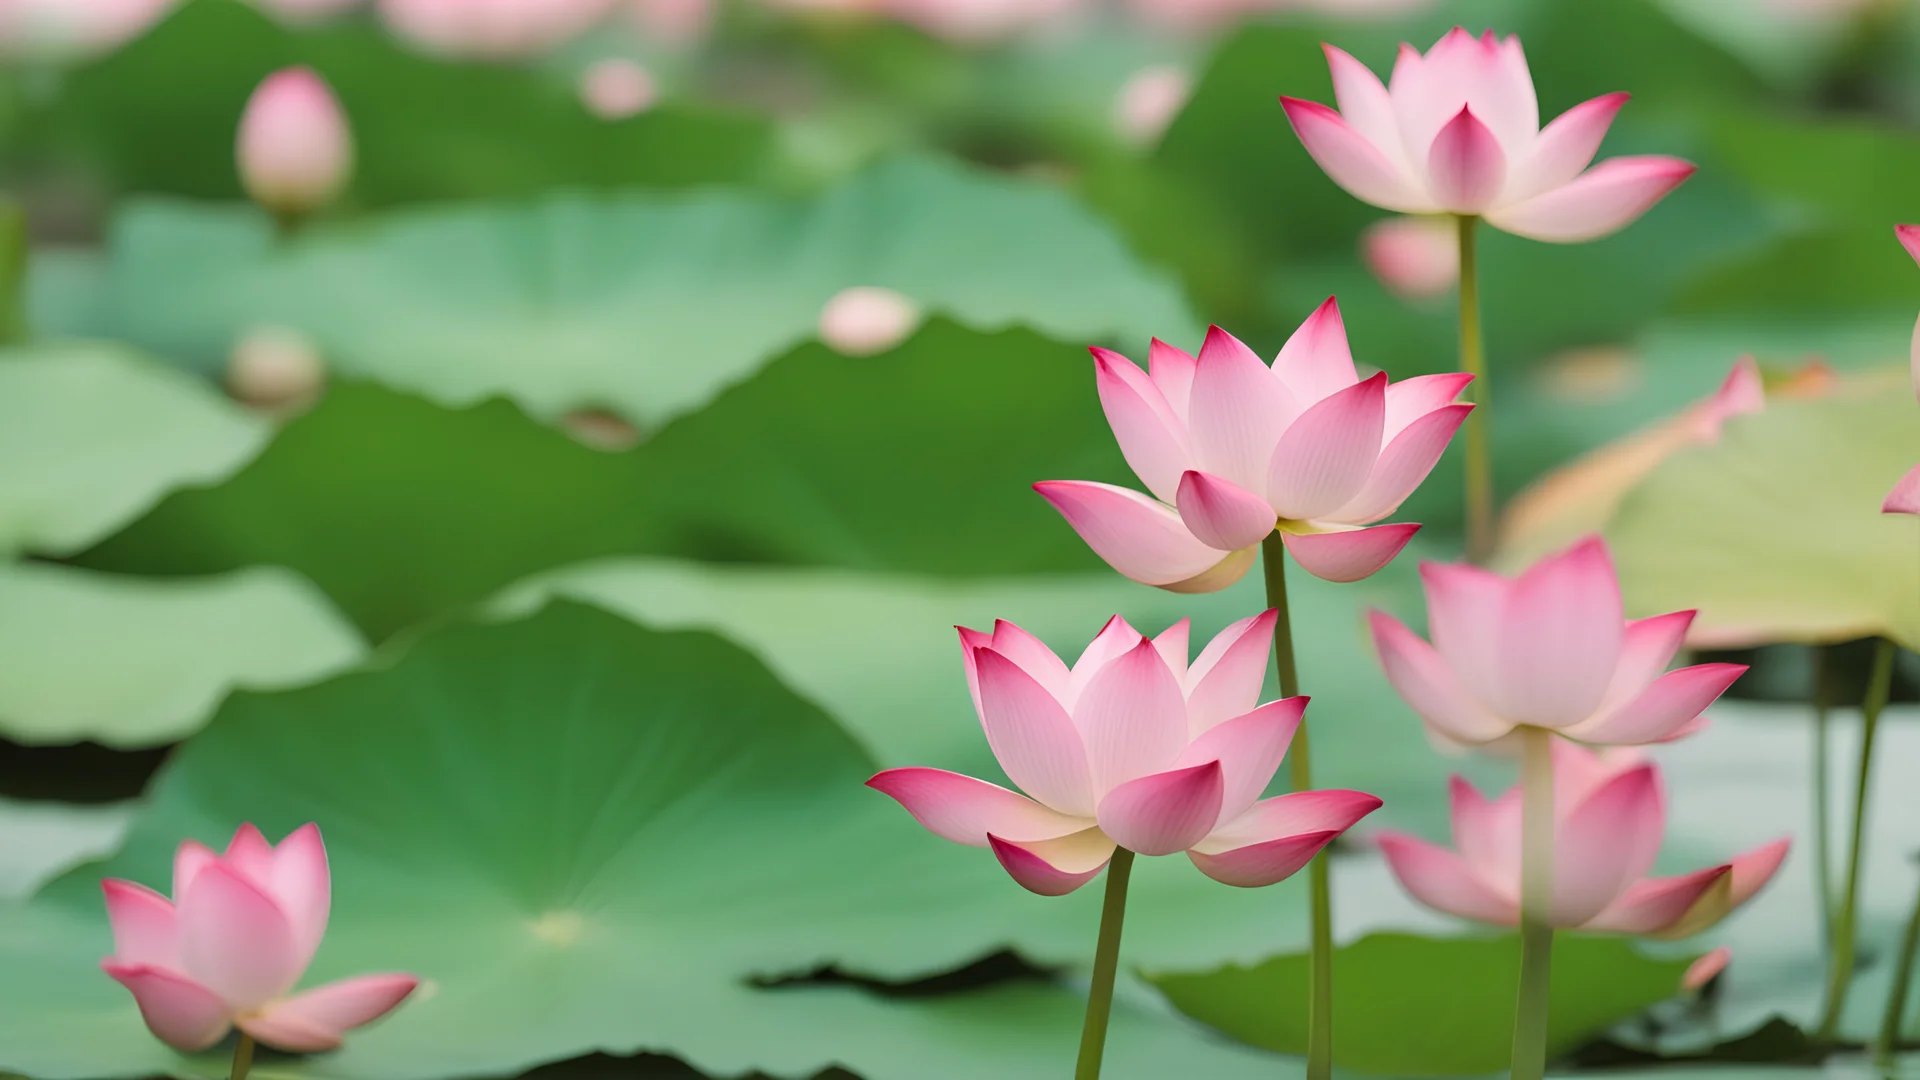 Blooming Lotus in Summer